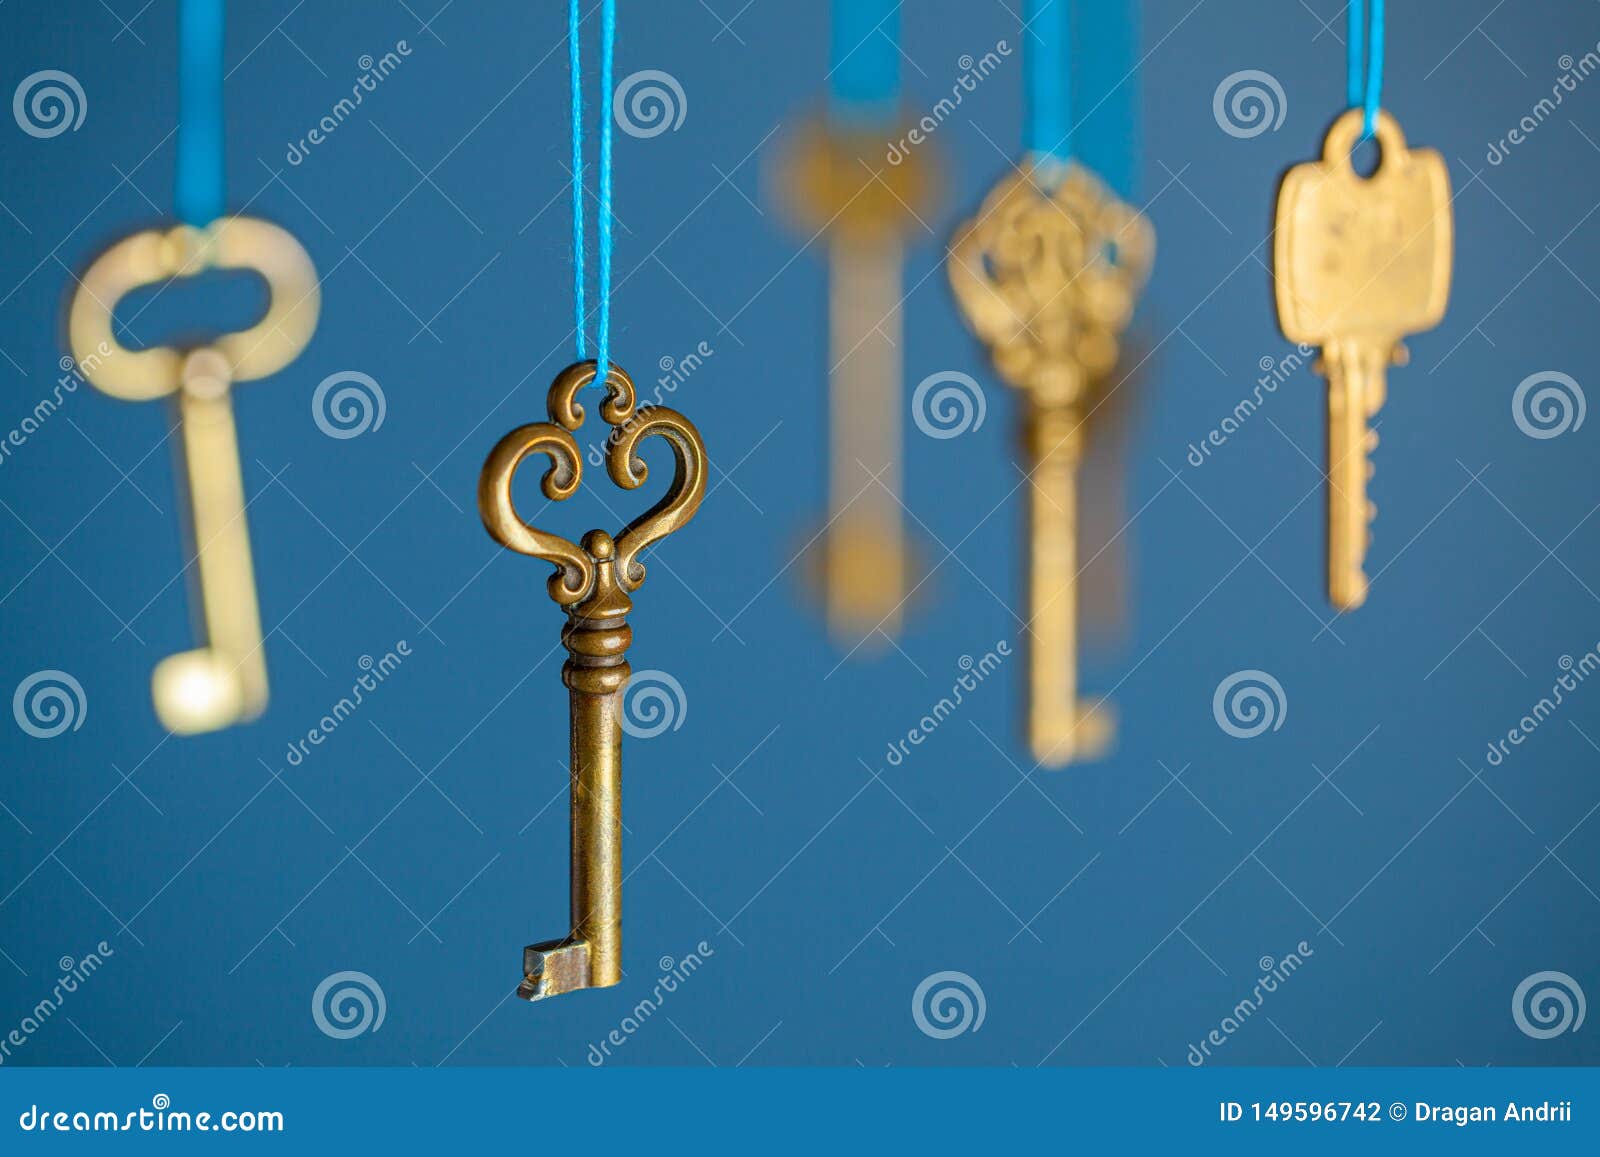 Ключ из желтого металла. Ключи весят. Много ключей на нитке. Ключ весит на верёвке.